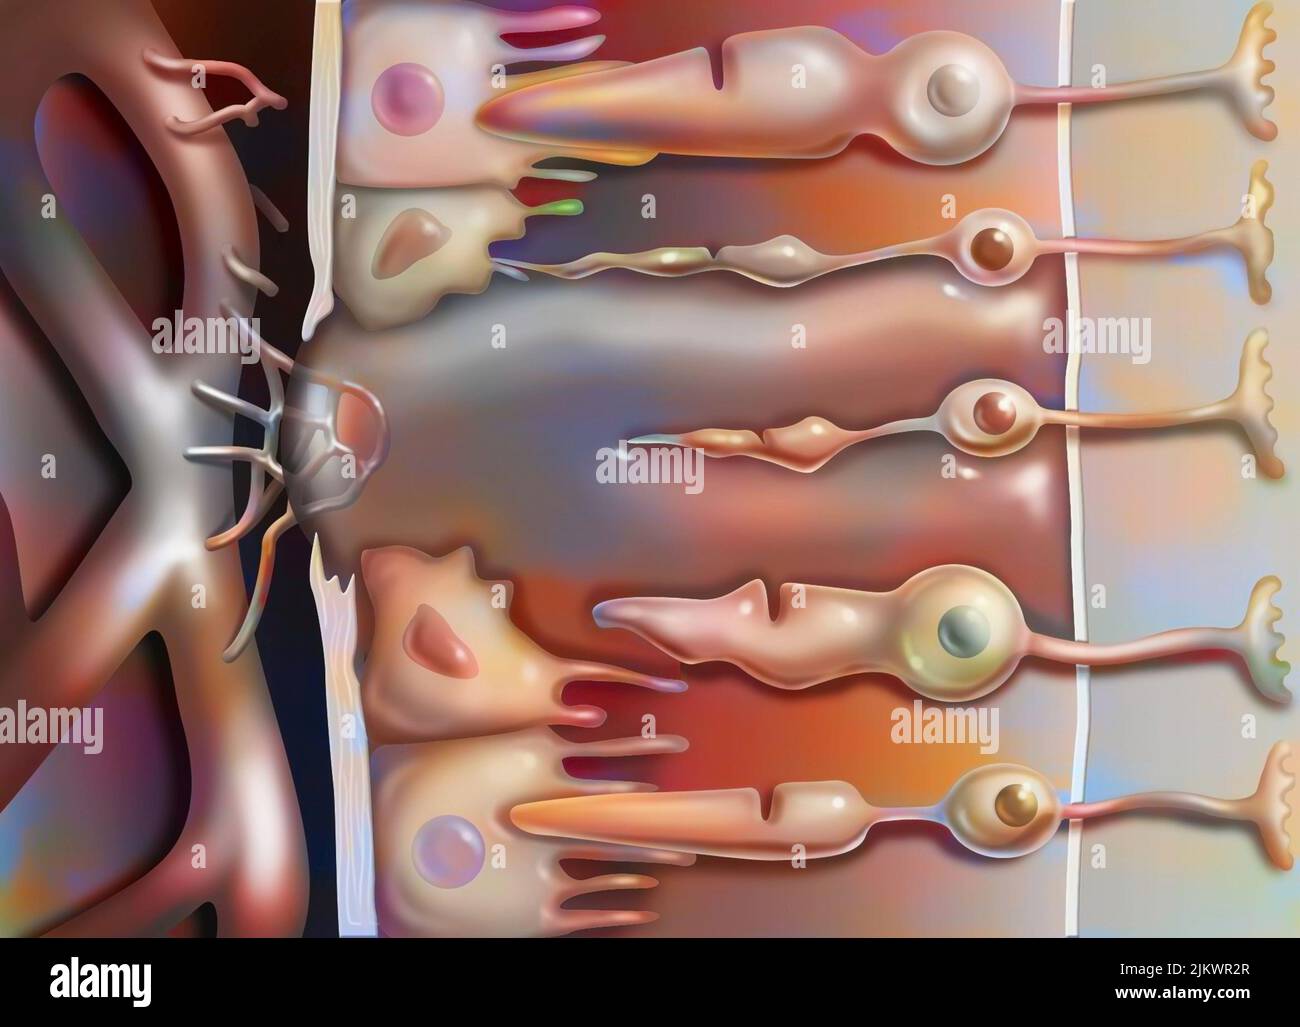 Zoom avanti sulla degenerazione maculare legata all'età che colpisce la macula, l'area centrale della retina. Foto Stock